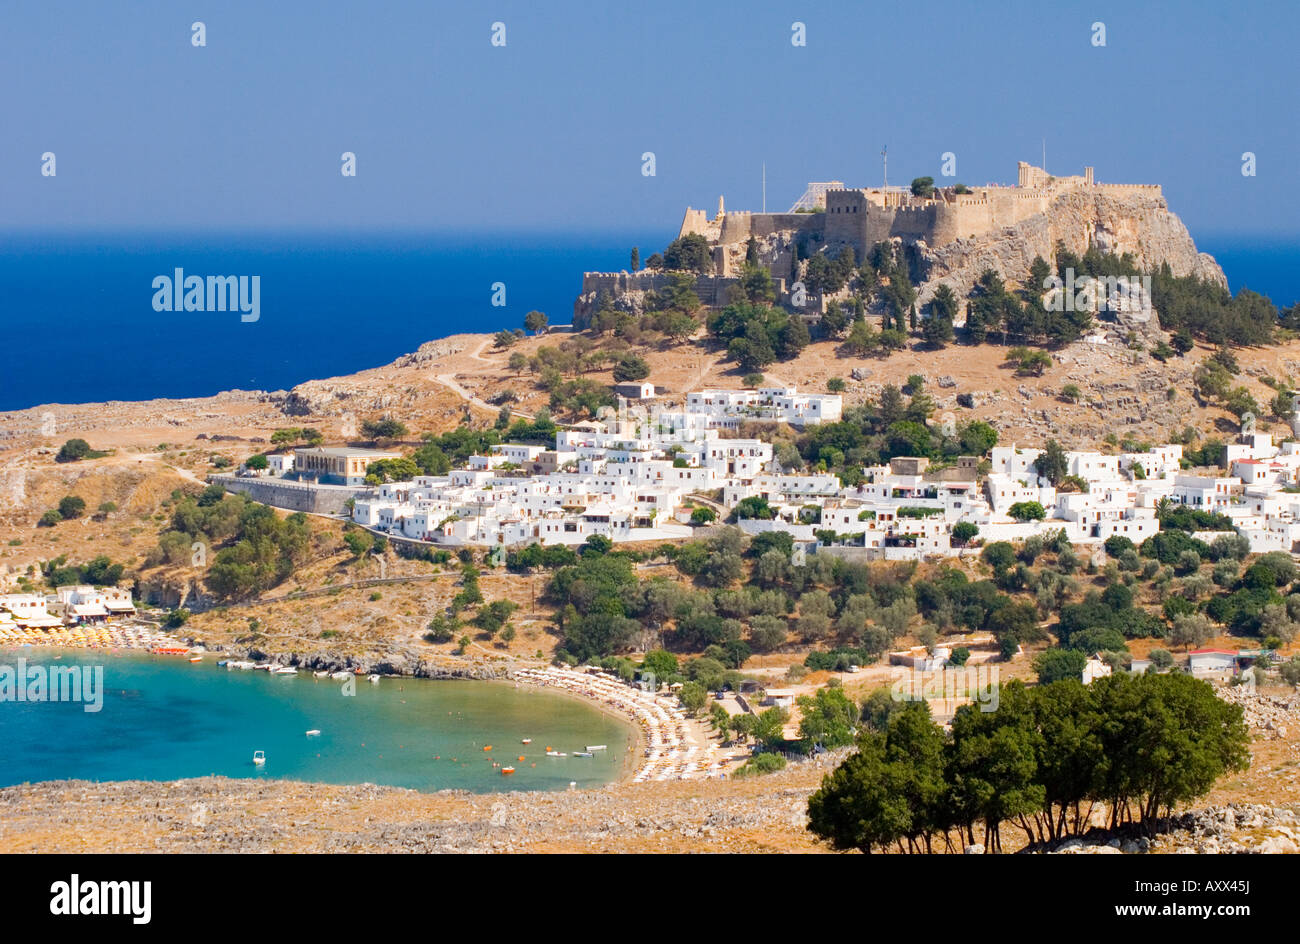 Dodécanèse typiques maisons blanches et l'Acropole de Lindos, au-dessus de Rhodes, Dodécanèse, îles grecques, Grèce, Europe Banque D'Images